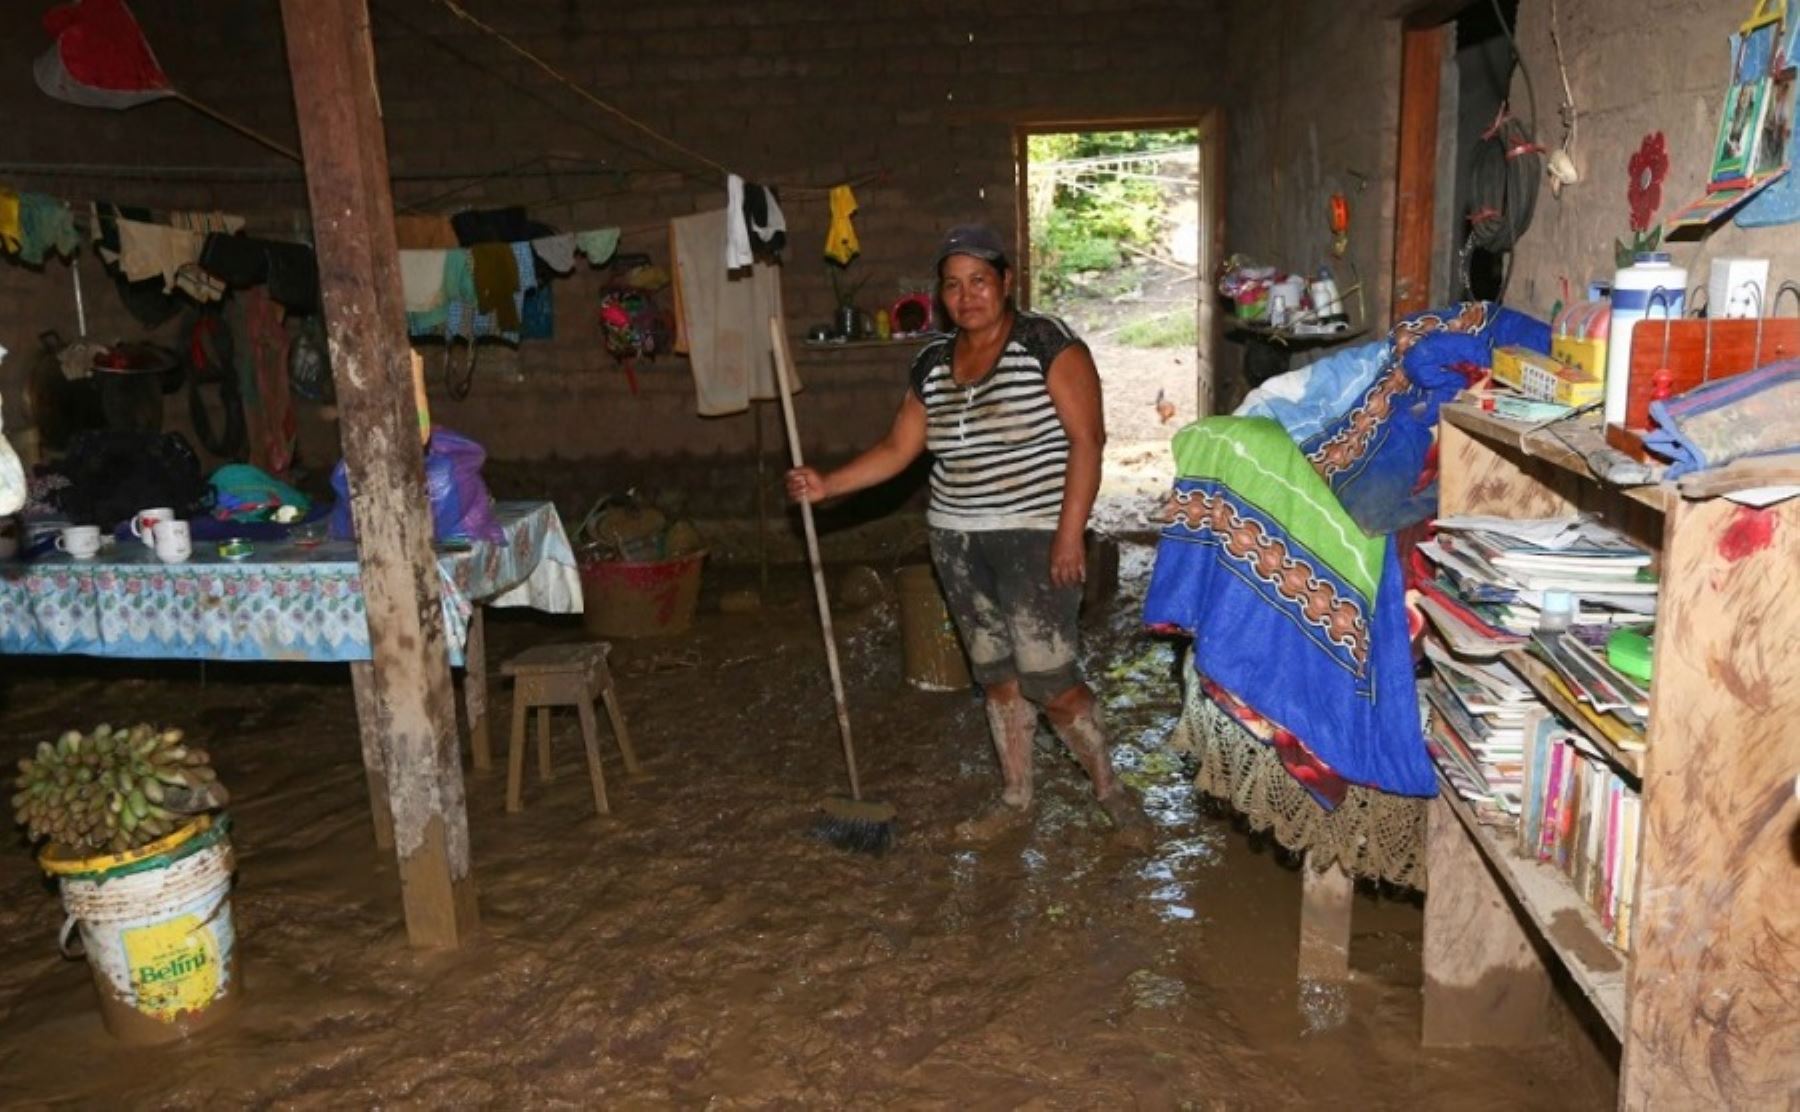 La cifra de familias damnificadas por las inundaciones en la provincia de Picota aumentó a 207 y las afectadas a 431, la mayoría de las cuales reside en el distrito de Shamboyacu, informó el Instituto Nacional de Defensa Civil (Indeci) en su más reciente reporte emitido hoy.